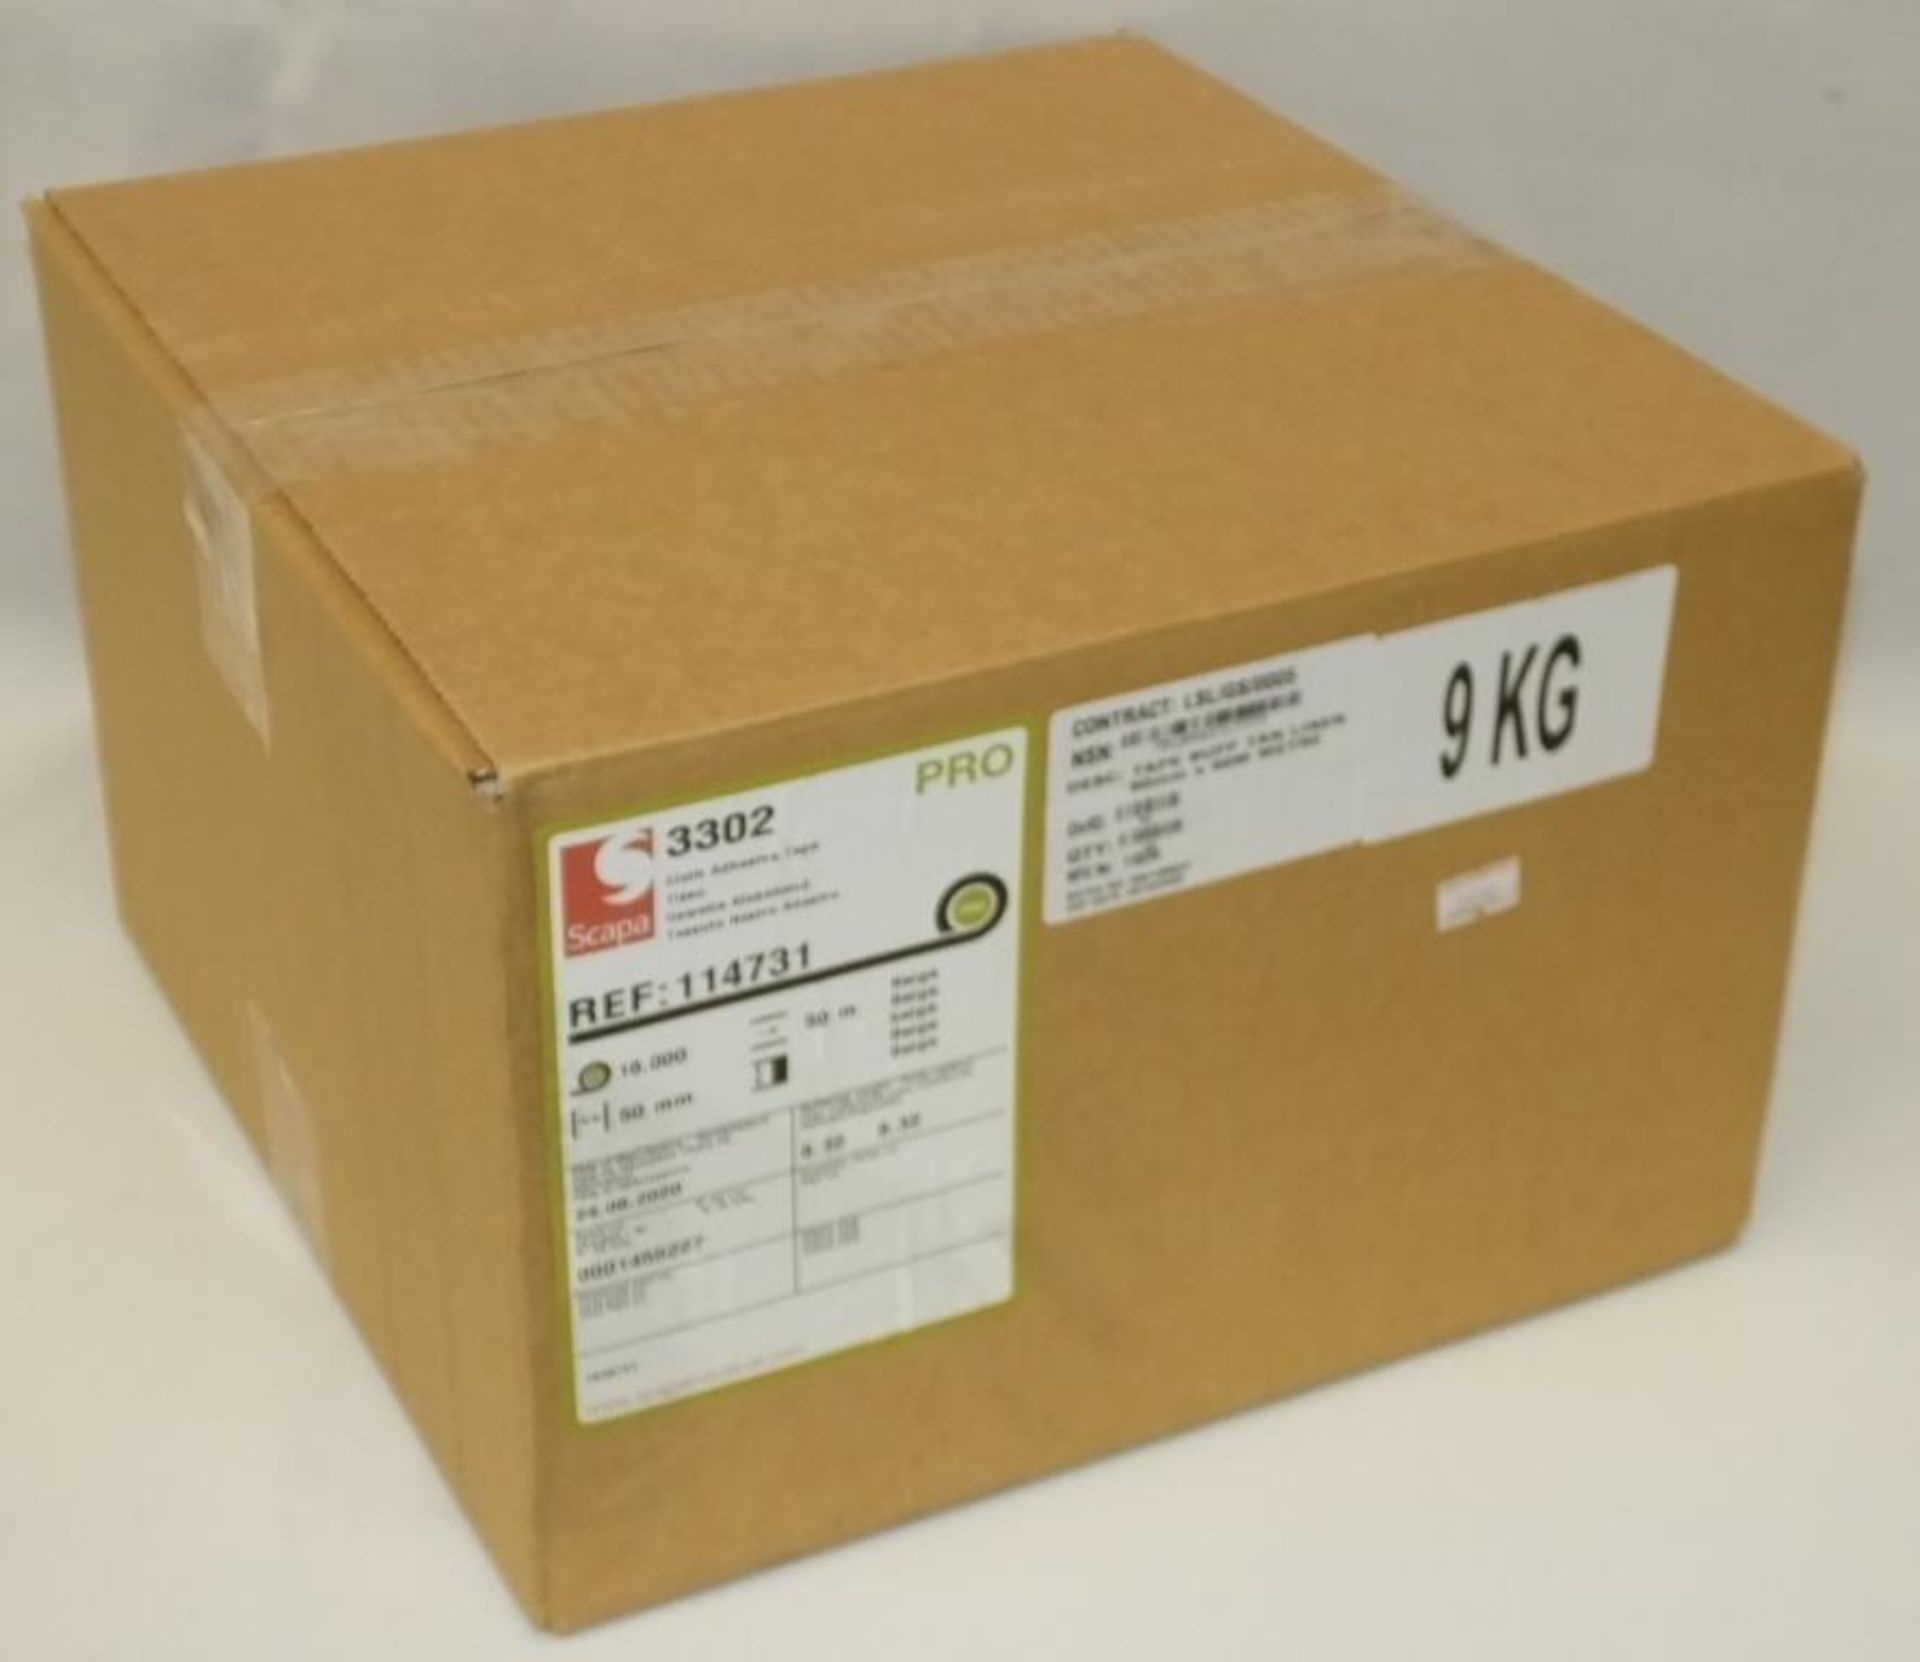 Scapa 3302 Pro Tape - Buff Tan Biege - 50mm x 50M rolls - 16 rolls per box - 2 boxes - Image 2 of 5